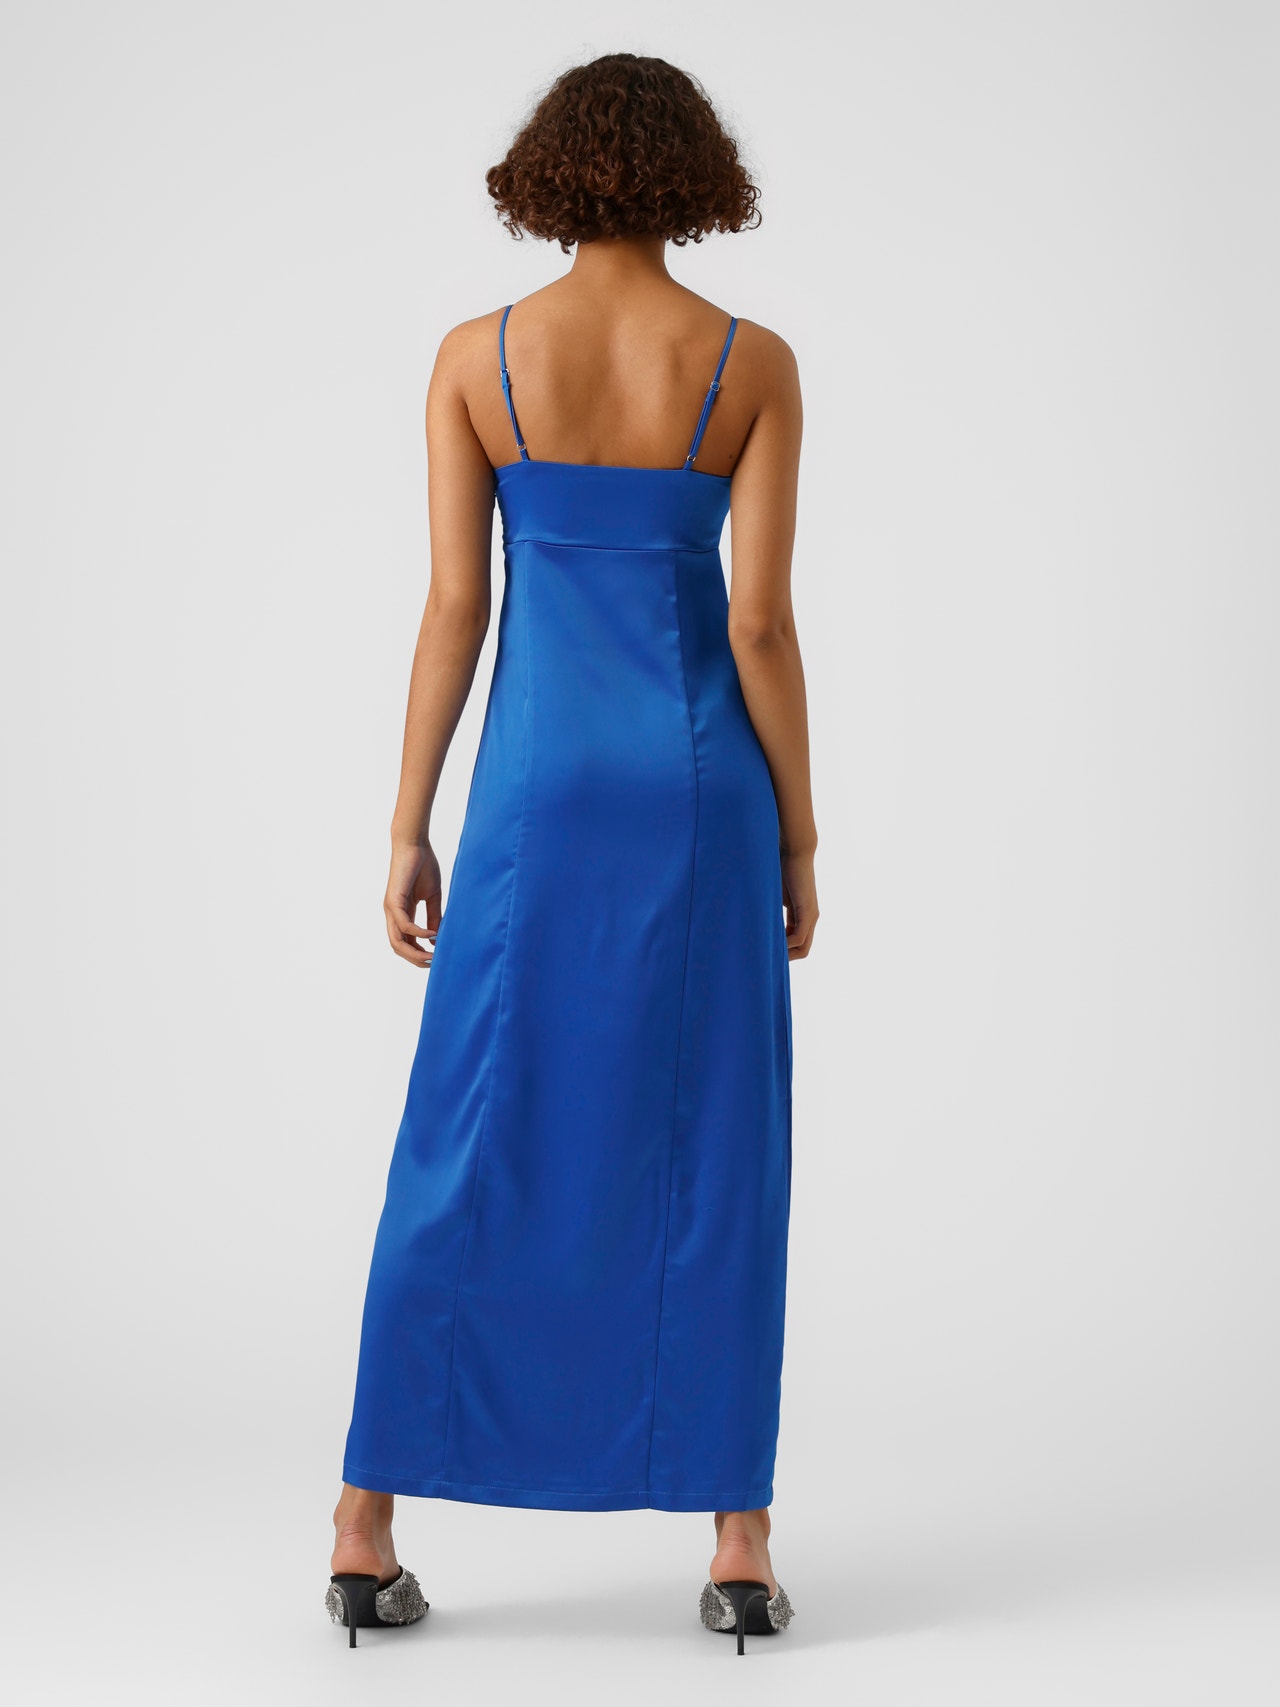 sur rulletrappe Fortov Slim fit V-hals Justerbare stropper Lang kjole med 50% rabat! | Vero Moda®